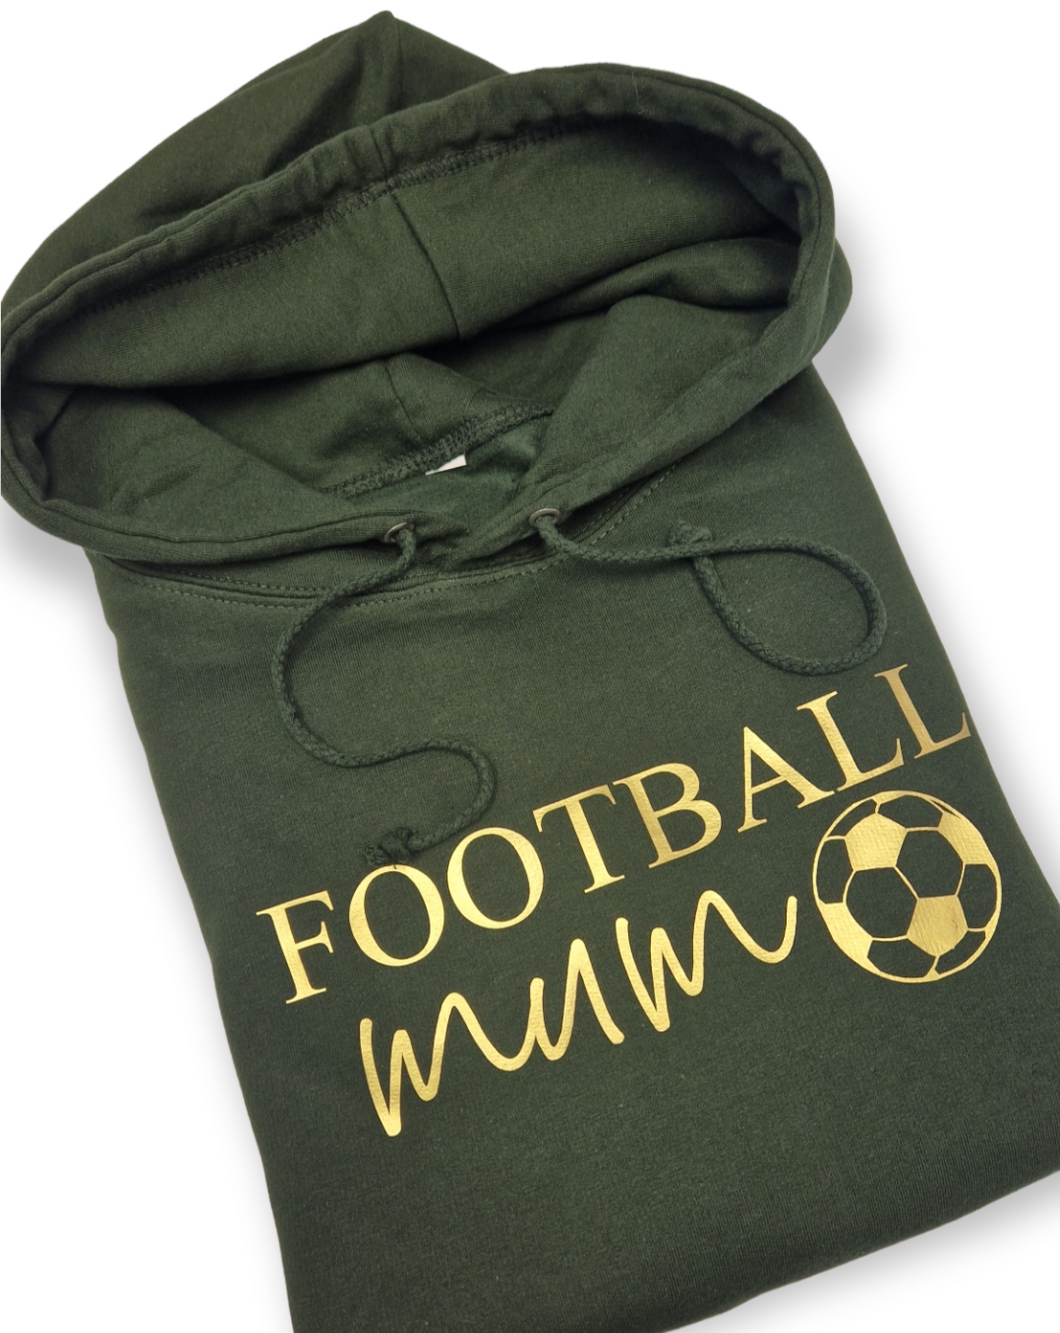 Football mum/dad hoodie